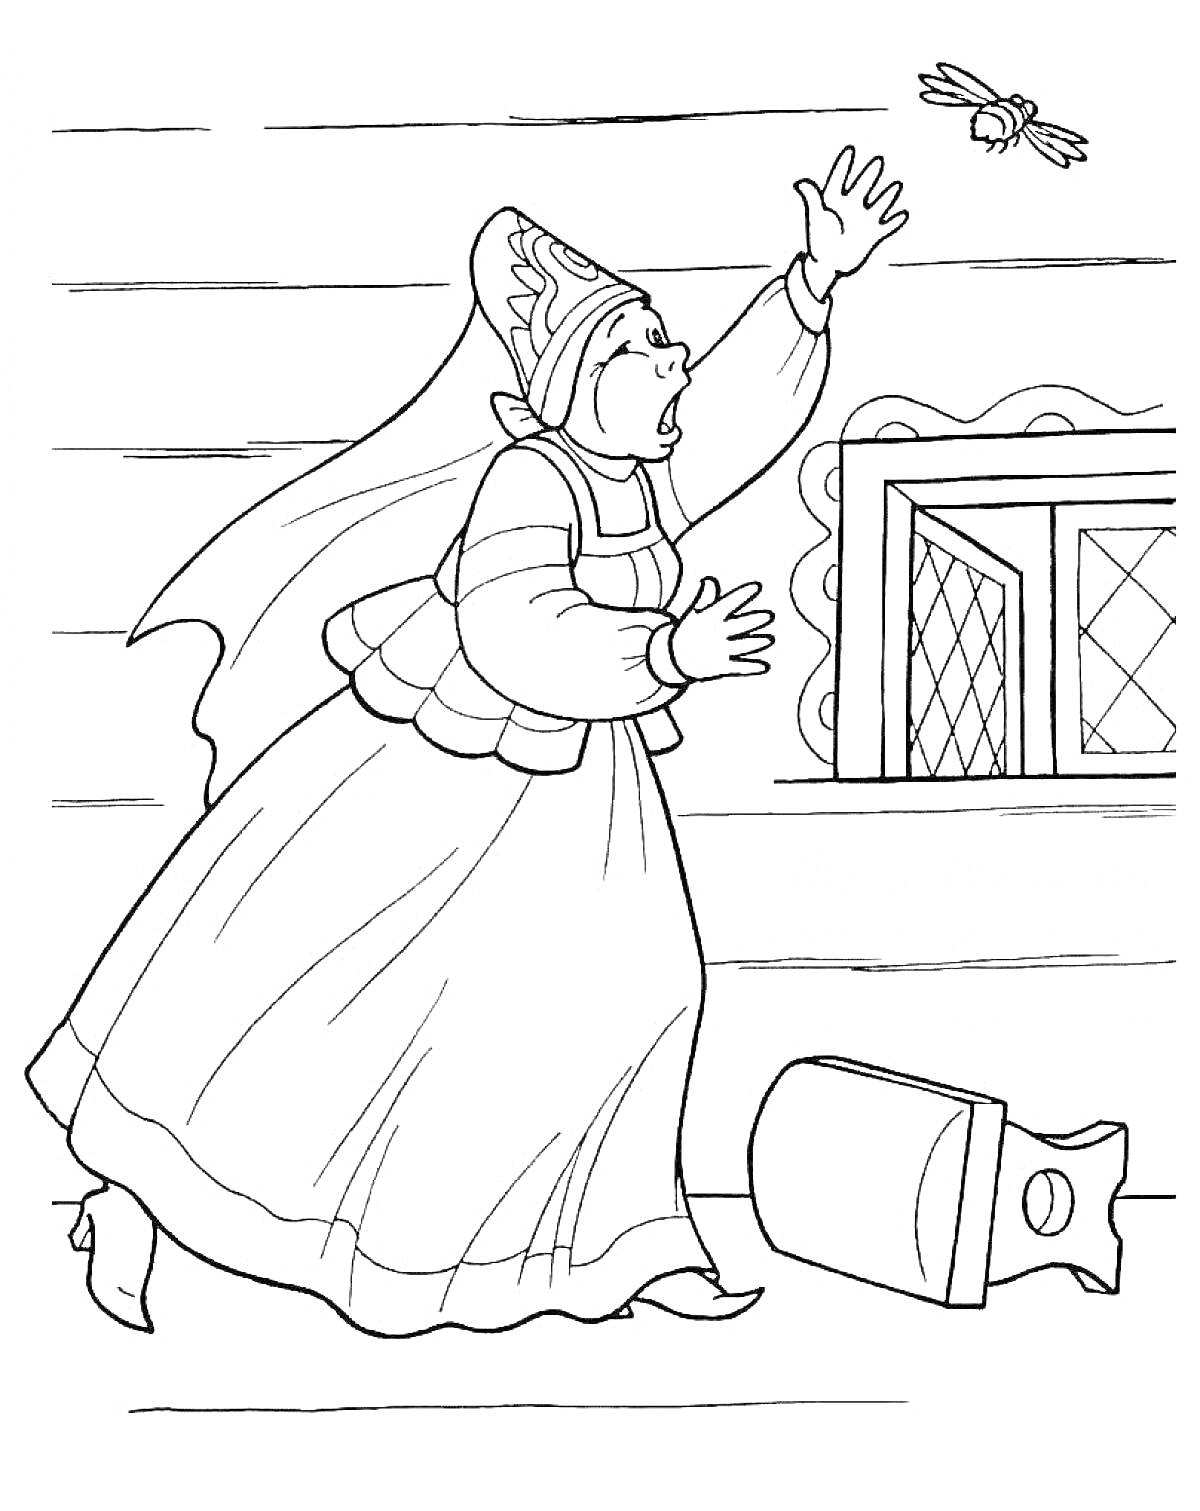 Женщина в традиционной одежде поднимает руку к летящей пчеле около окна, валяется мешок